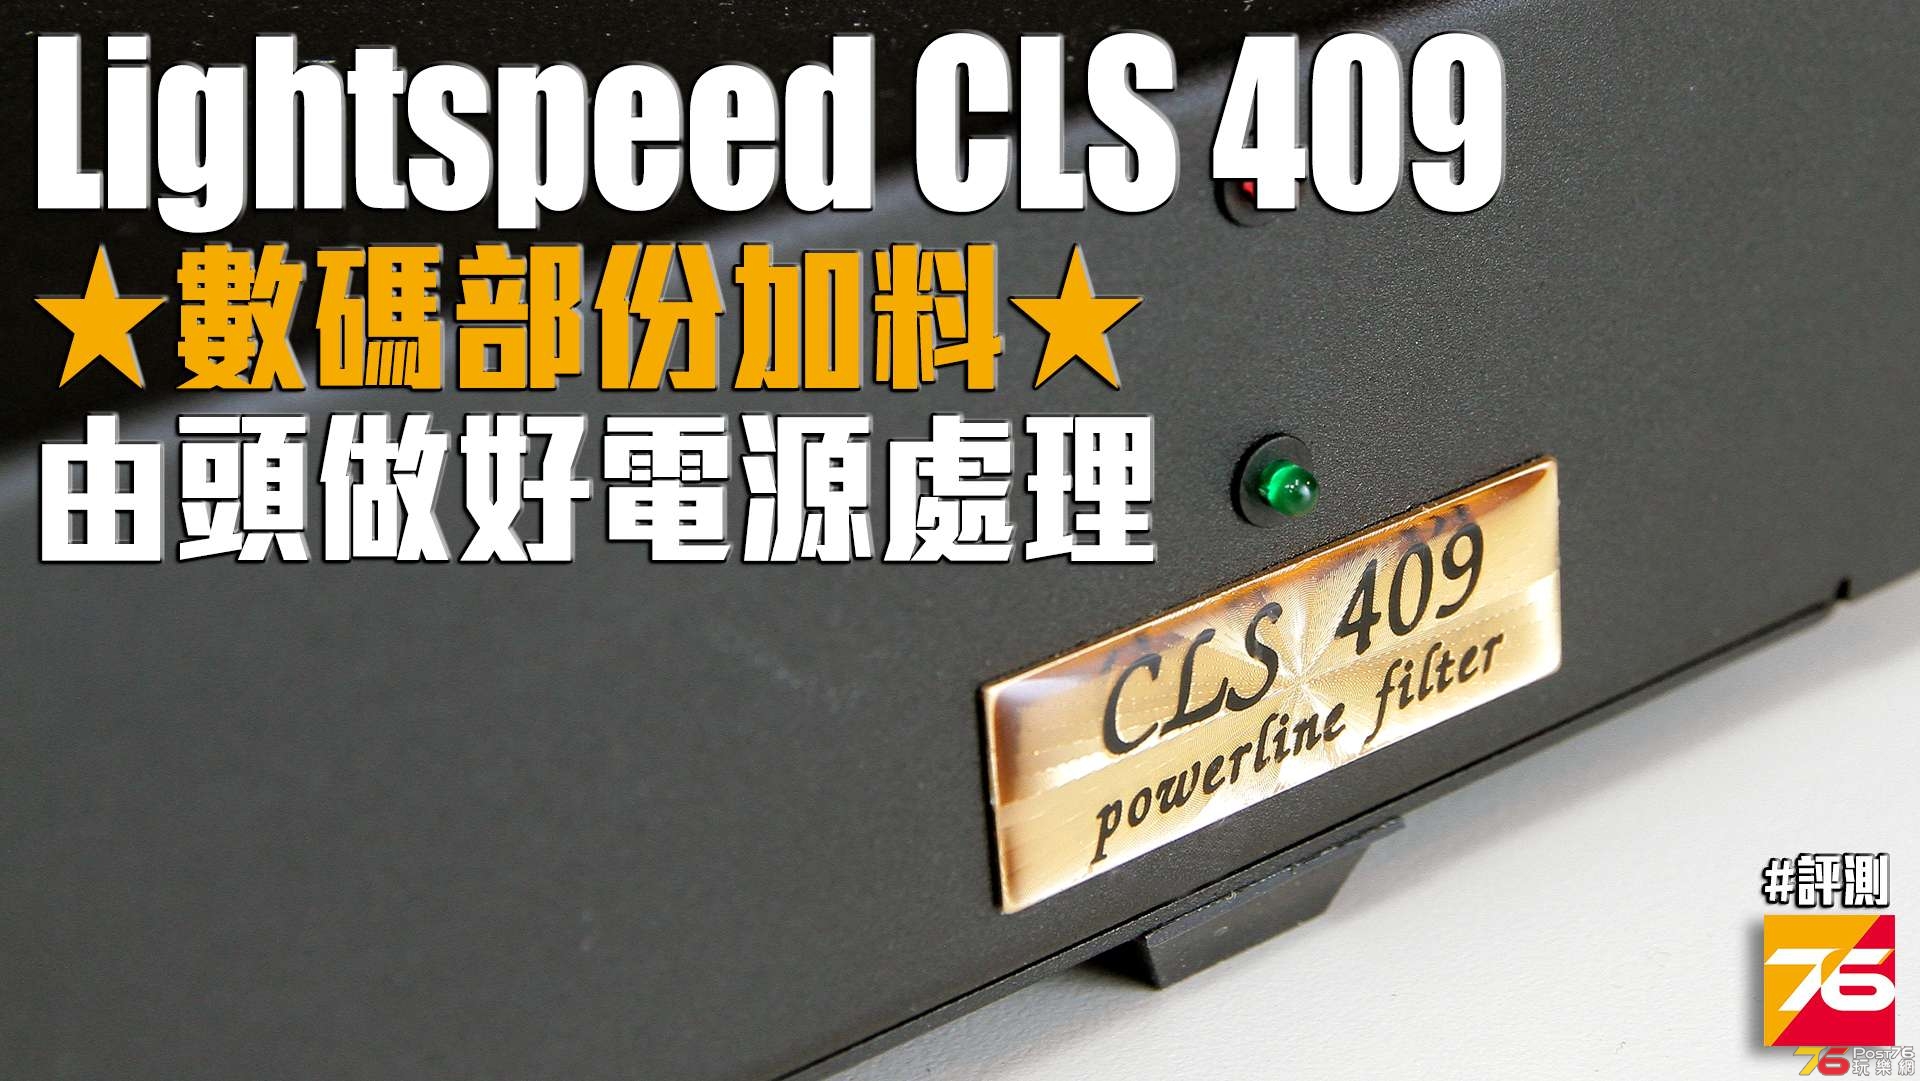 Lightspeed-CLS-409-review.jpg